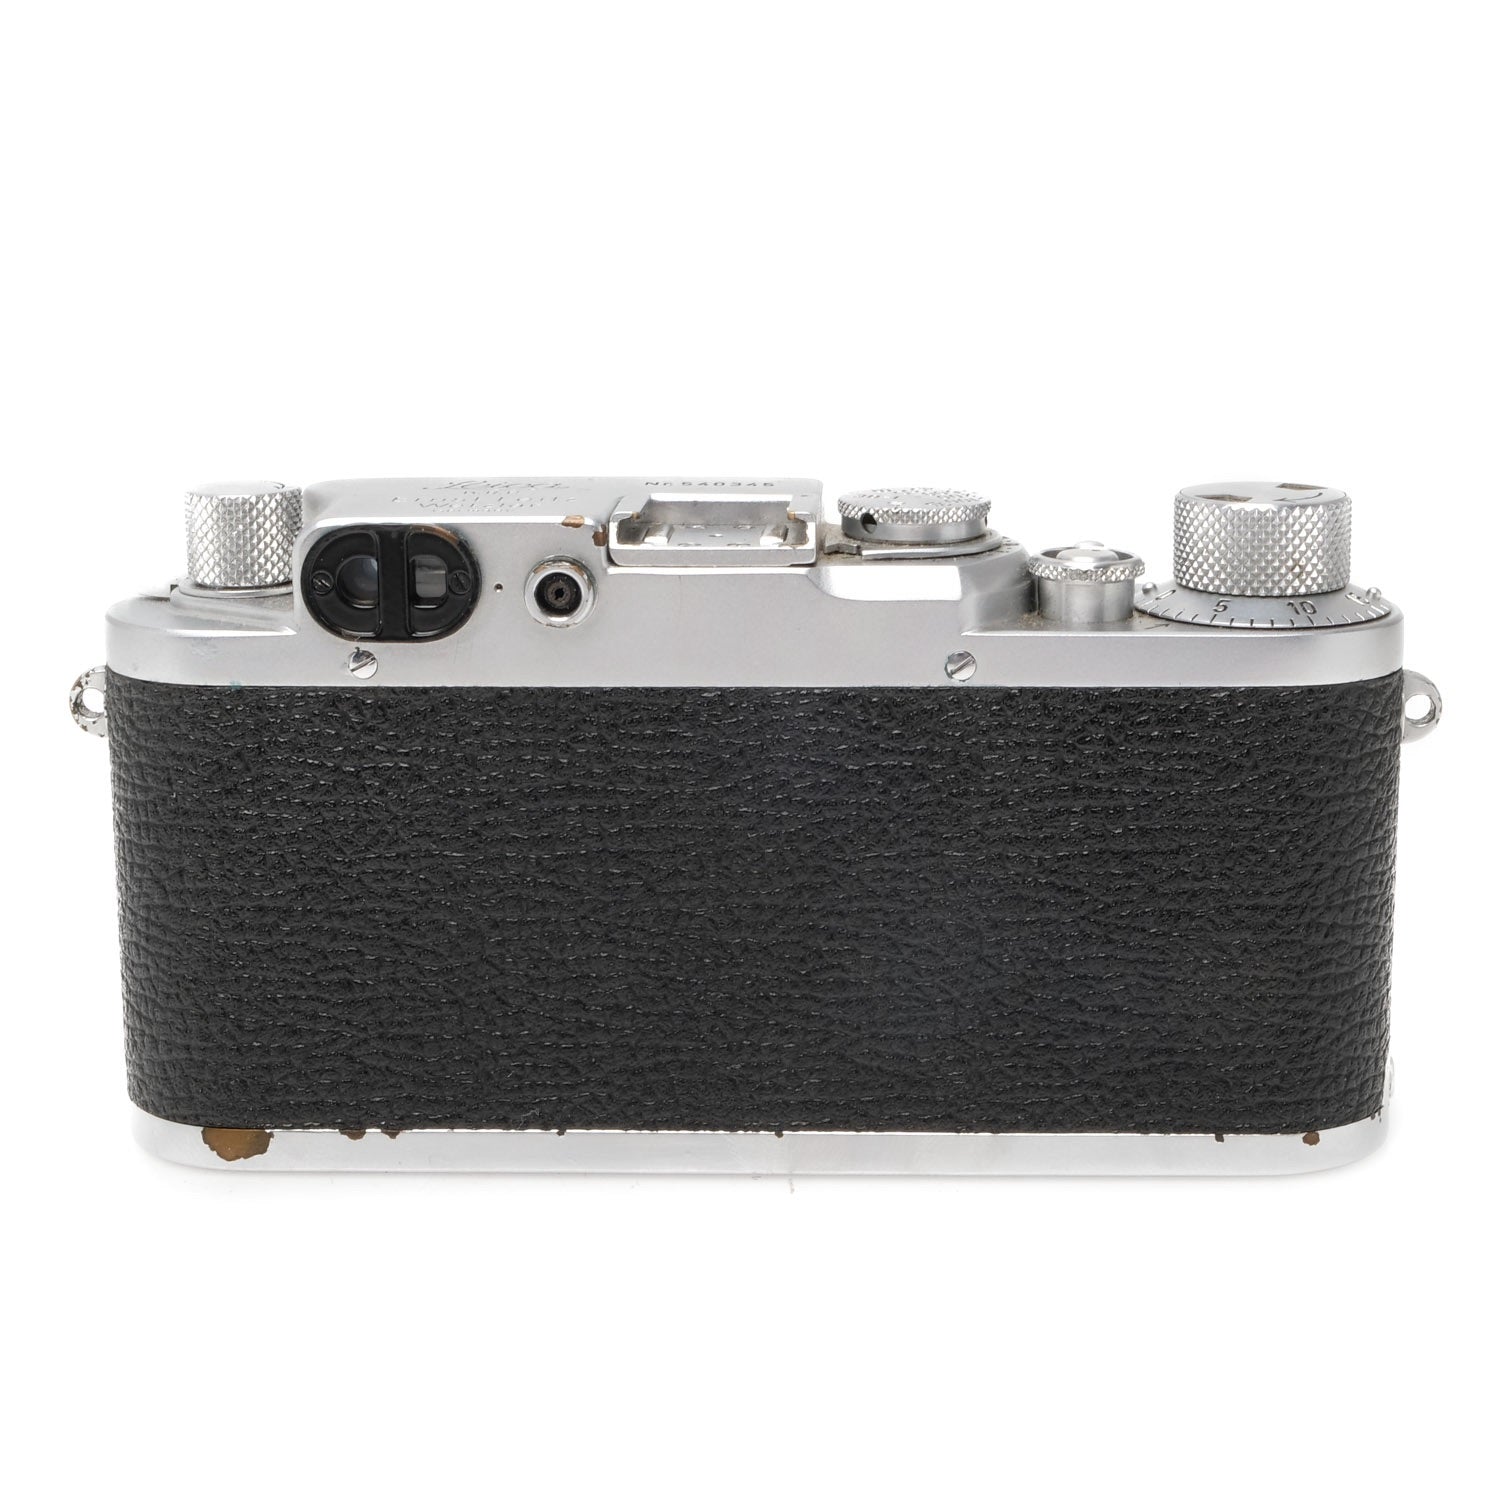 Leica IIIf Black Dial, RF Dim 540345